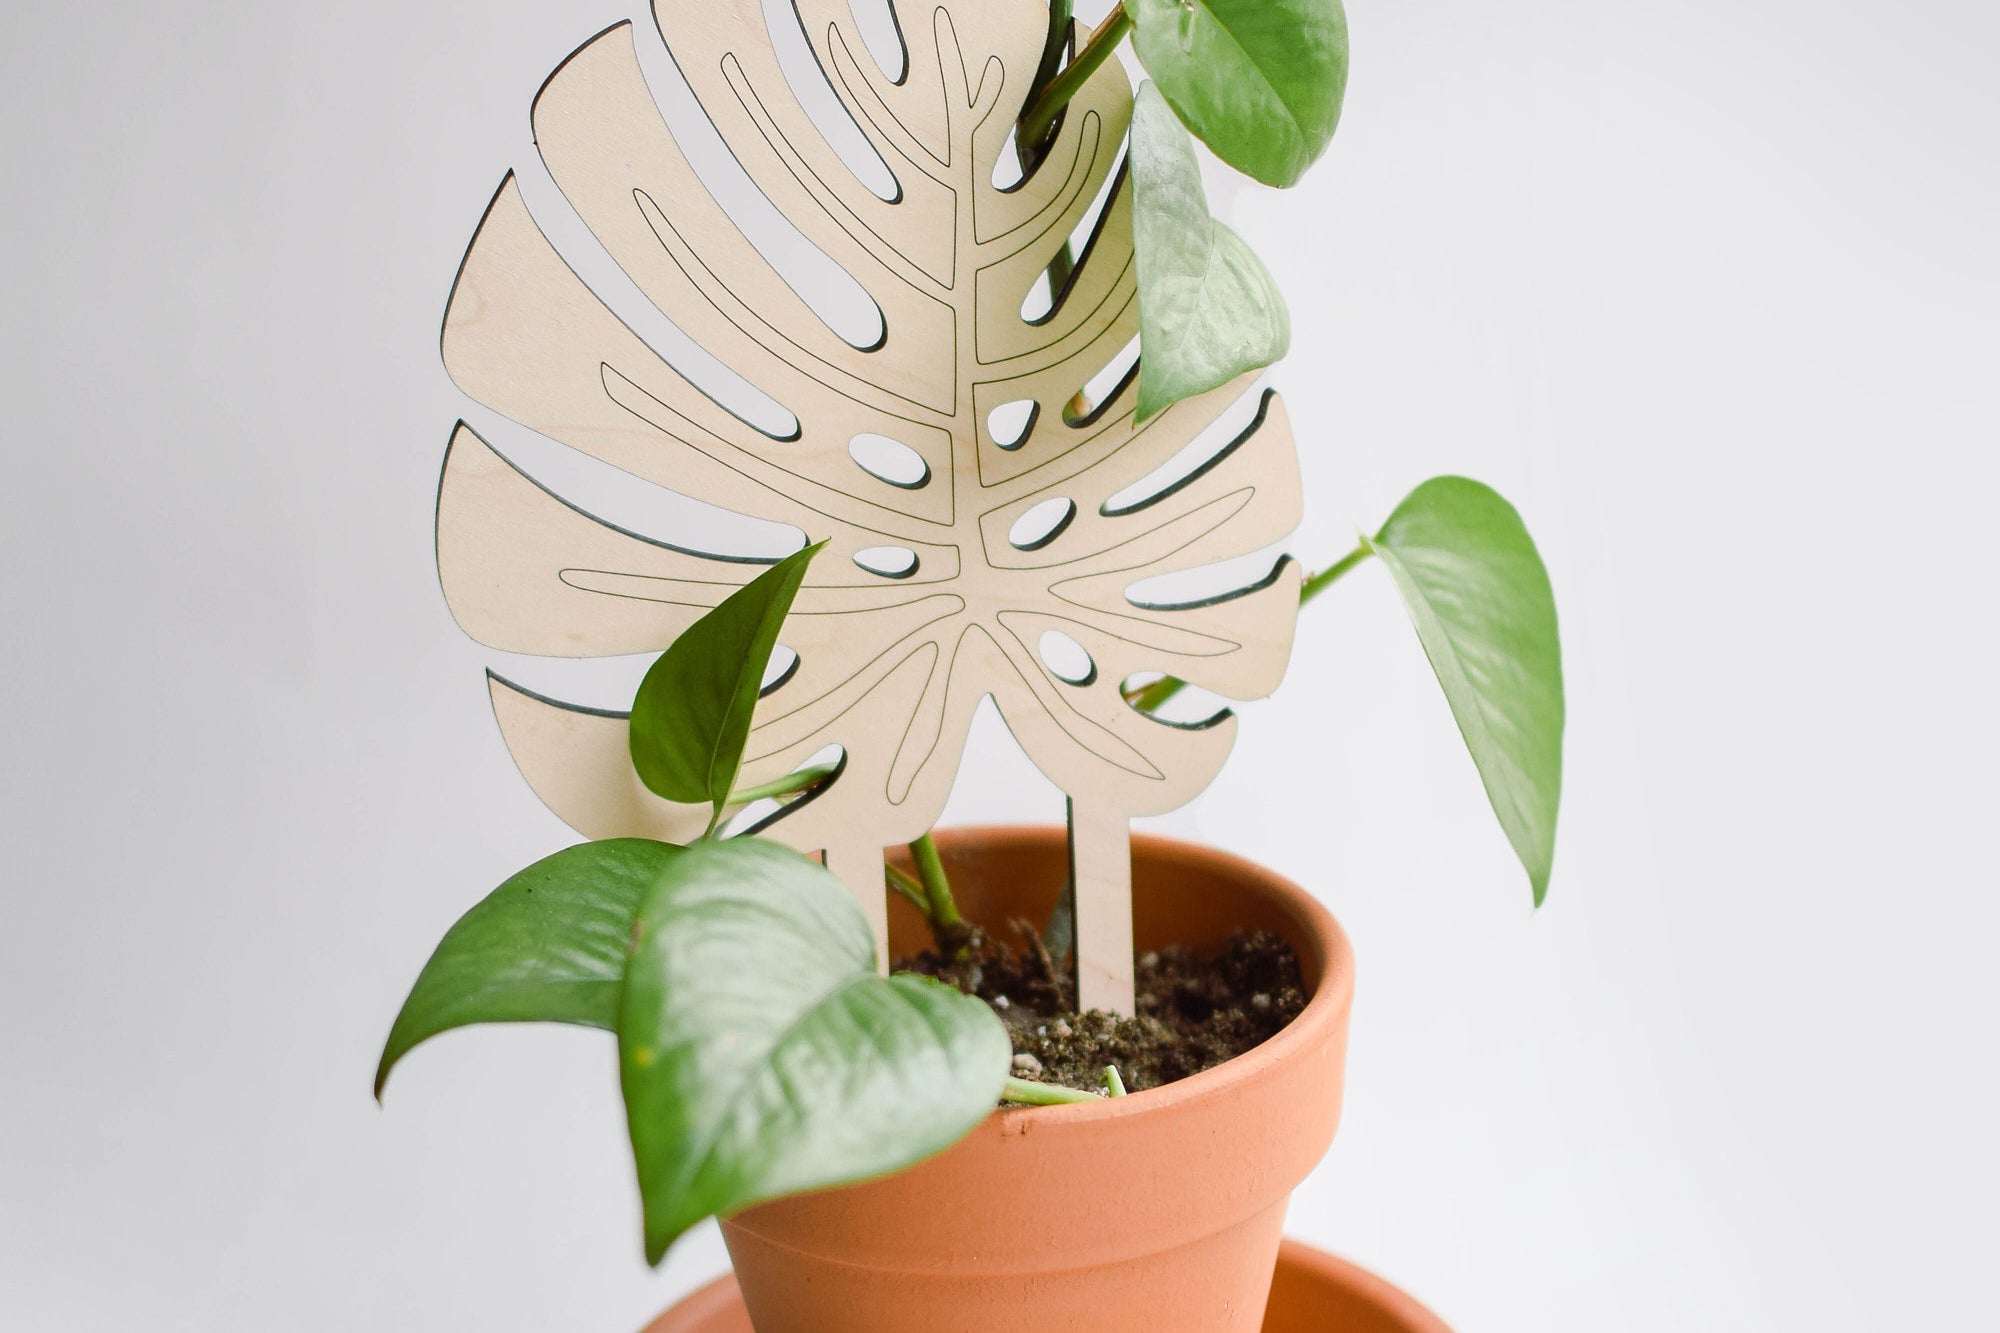 Monstera leaf indoor plant trellis for pots